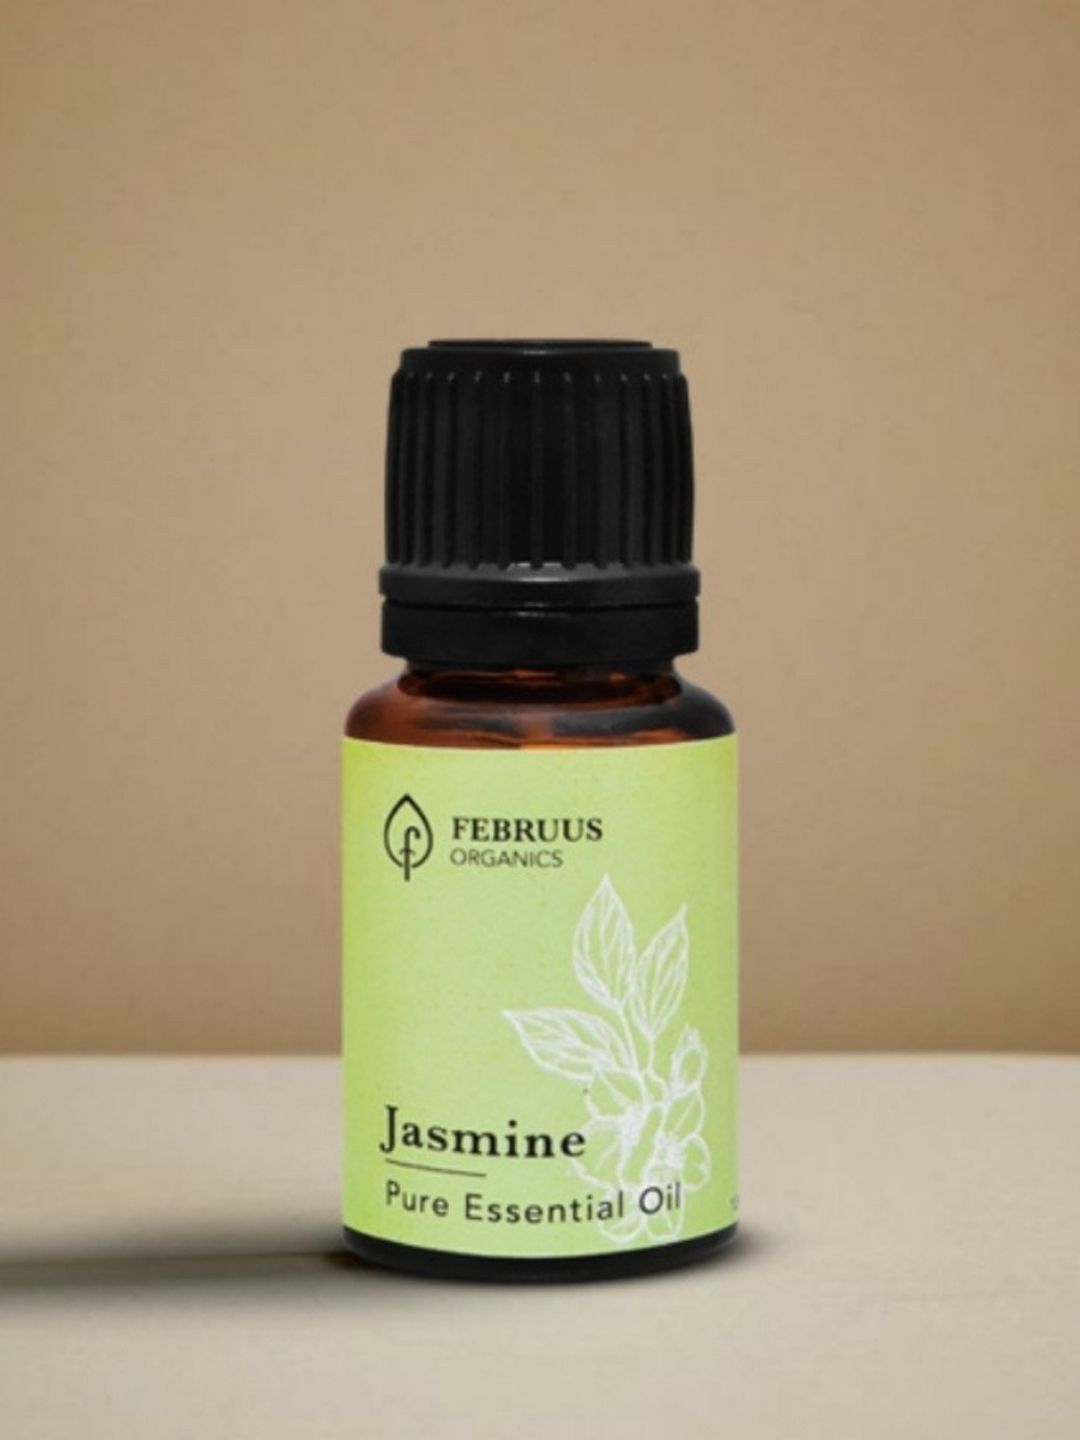 Februus Organics Jasmine Essential Oil 10ml Price in India